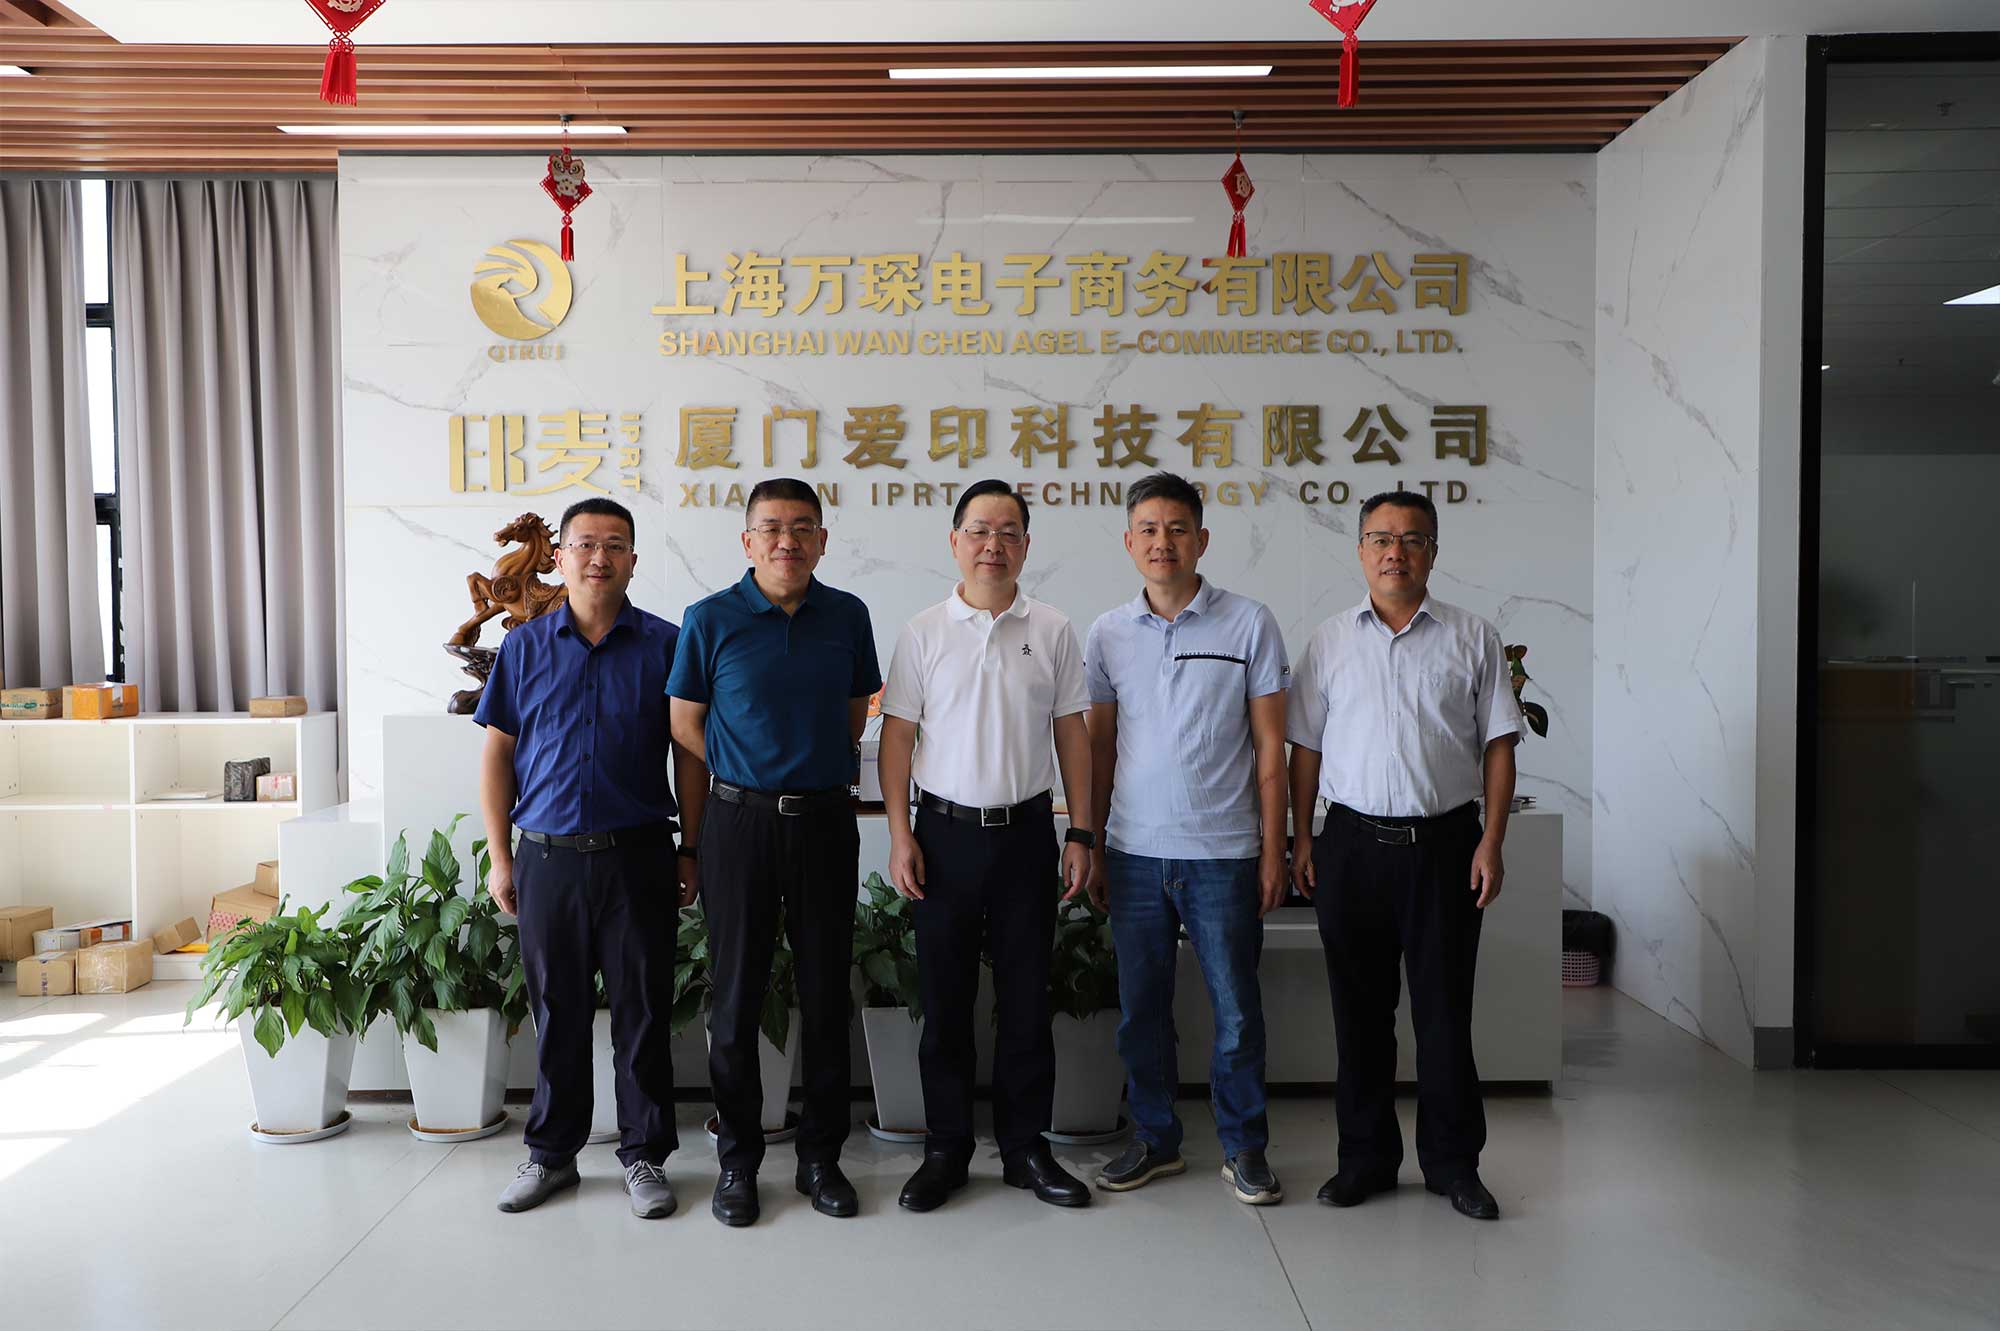 O vice-presidente da Xiamen CCPPC Li Qinhui e outros visitaram a IPRT Technology para investigação e orientação